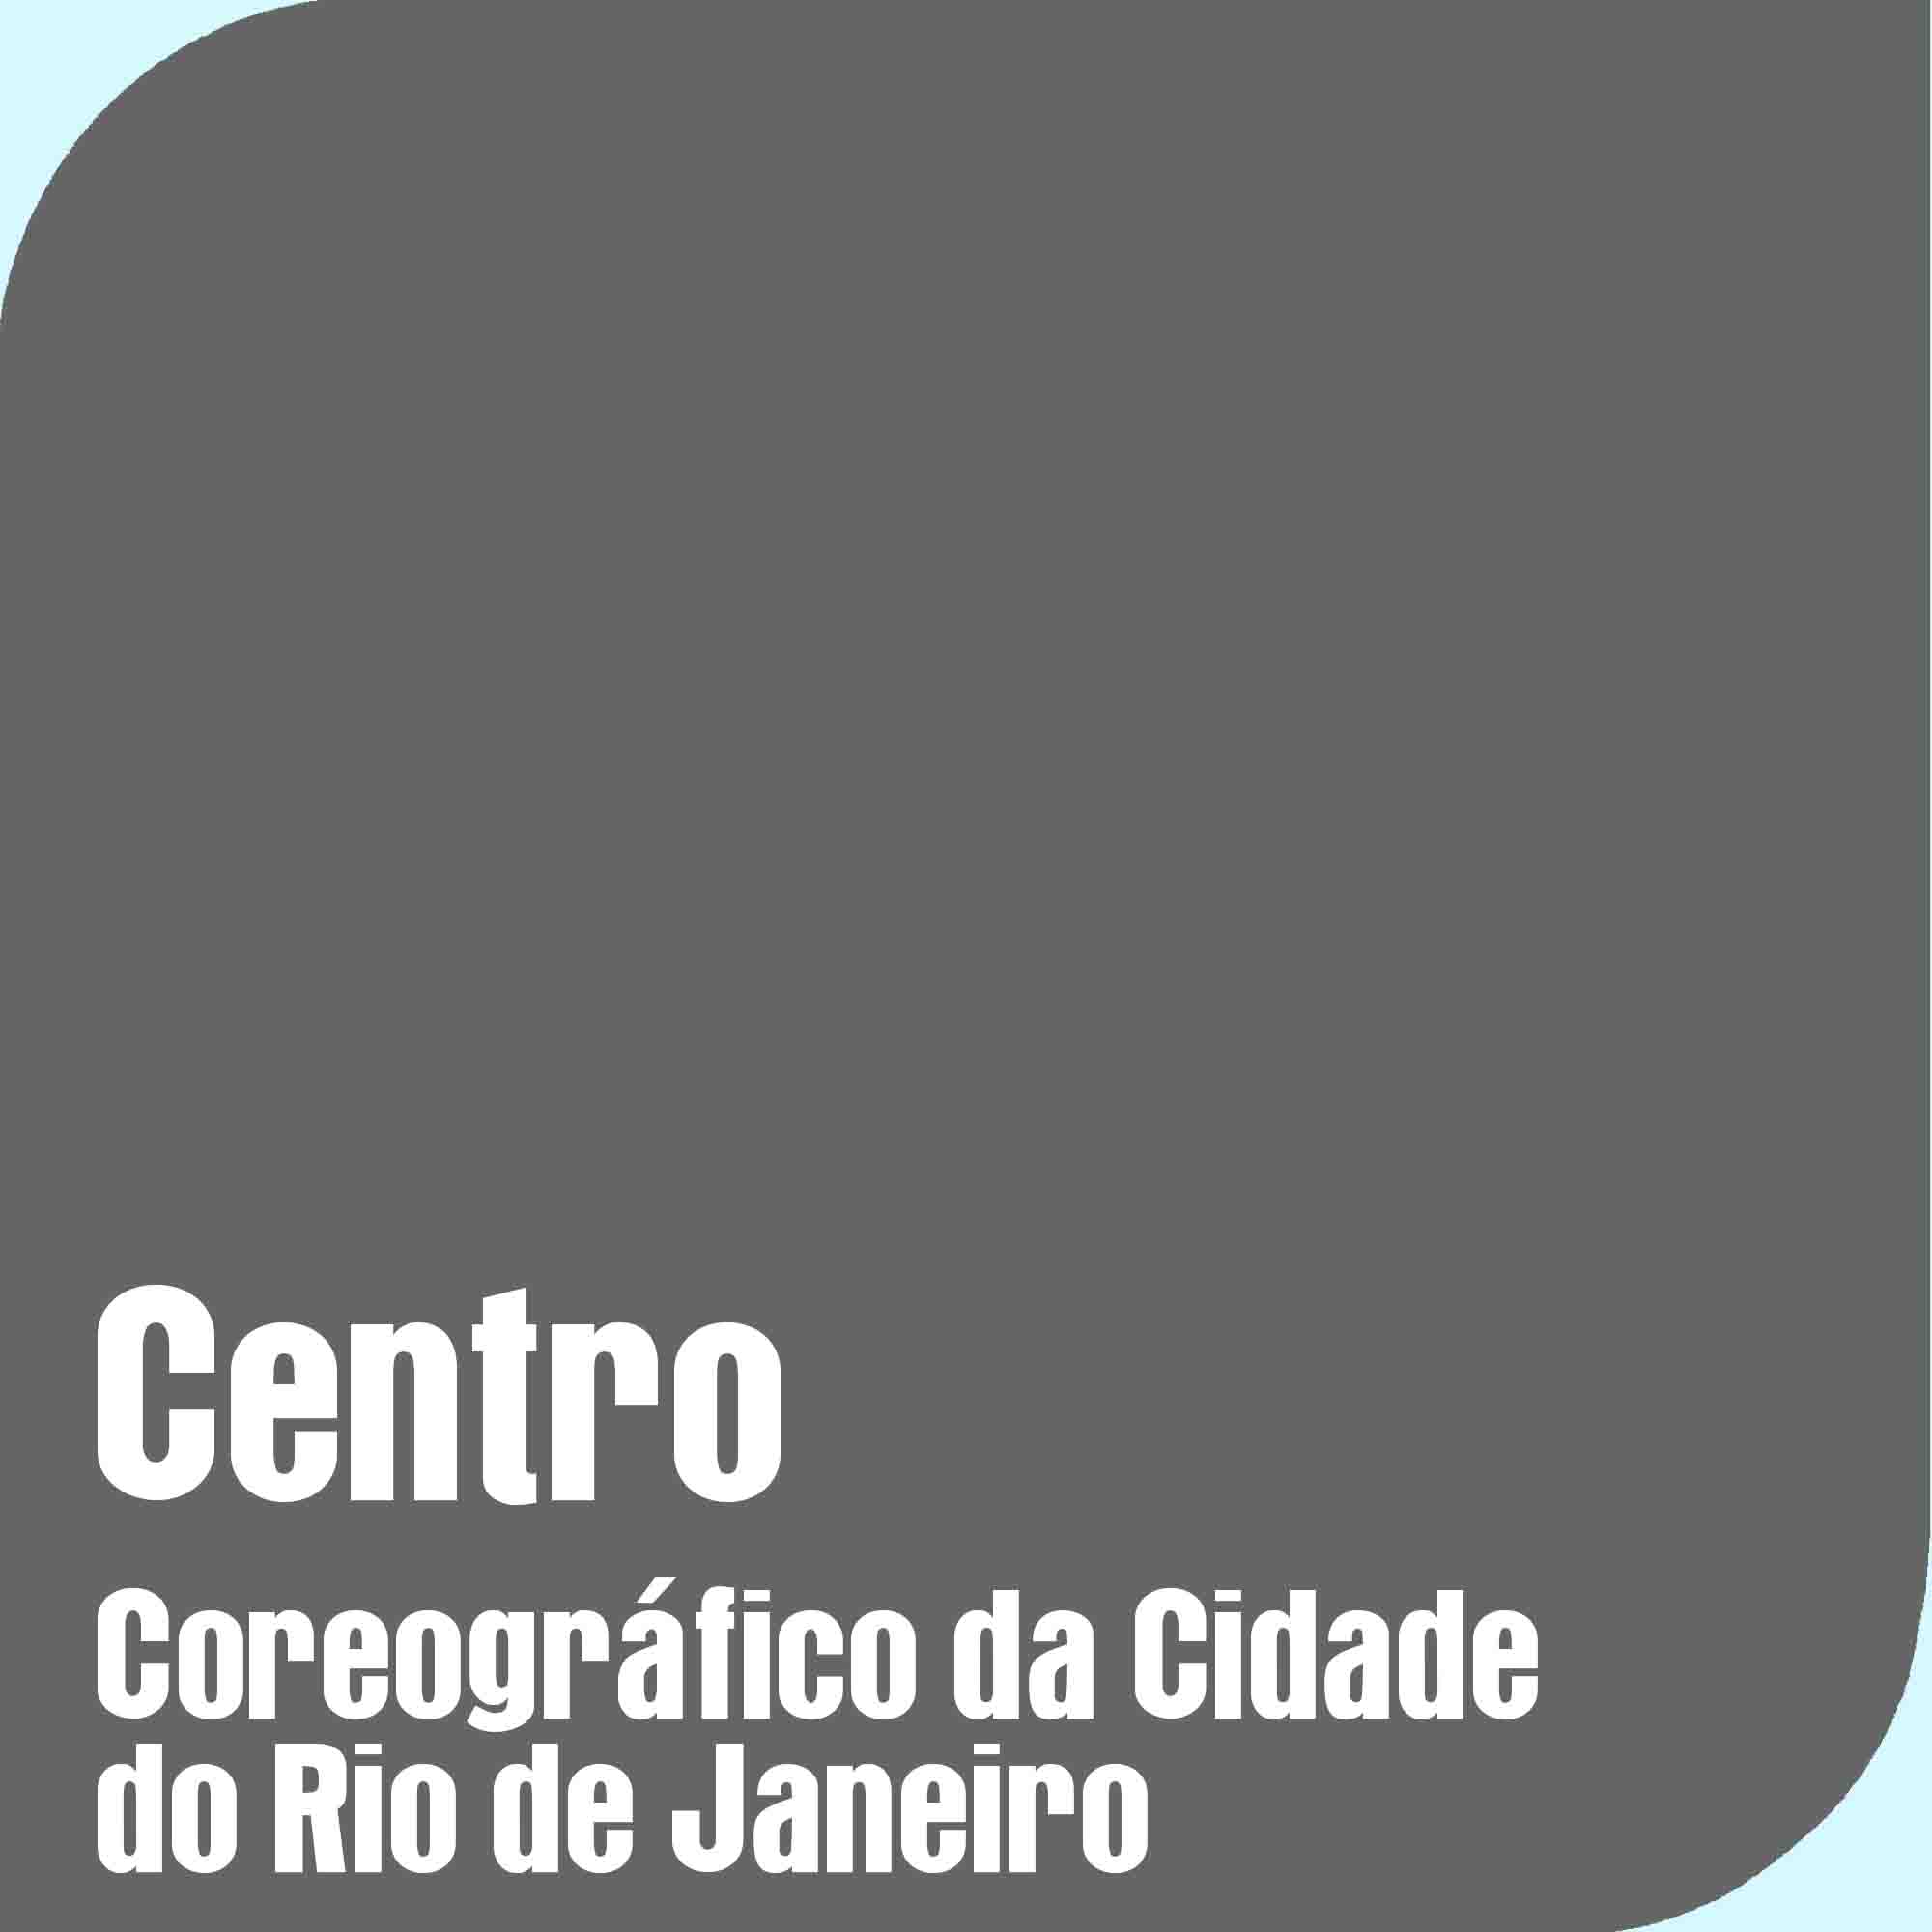 Centro Coreográfico da Cidade do Rio de Janeiro